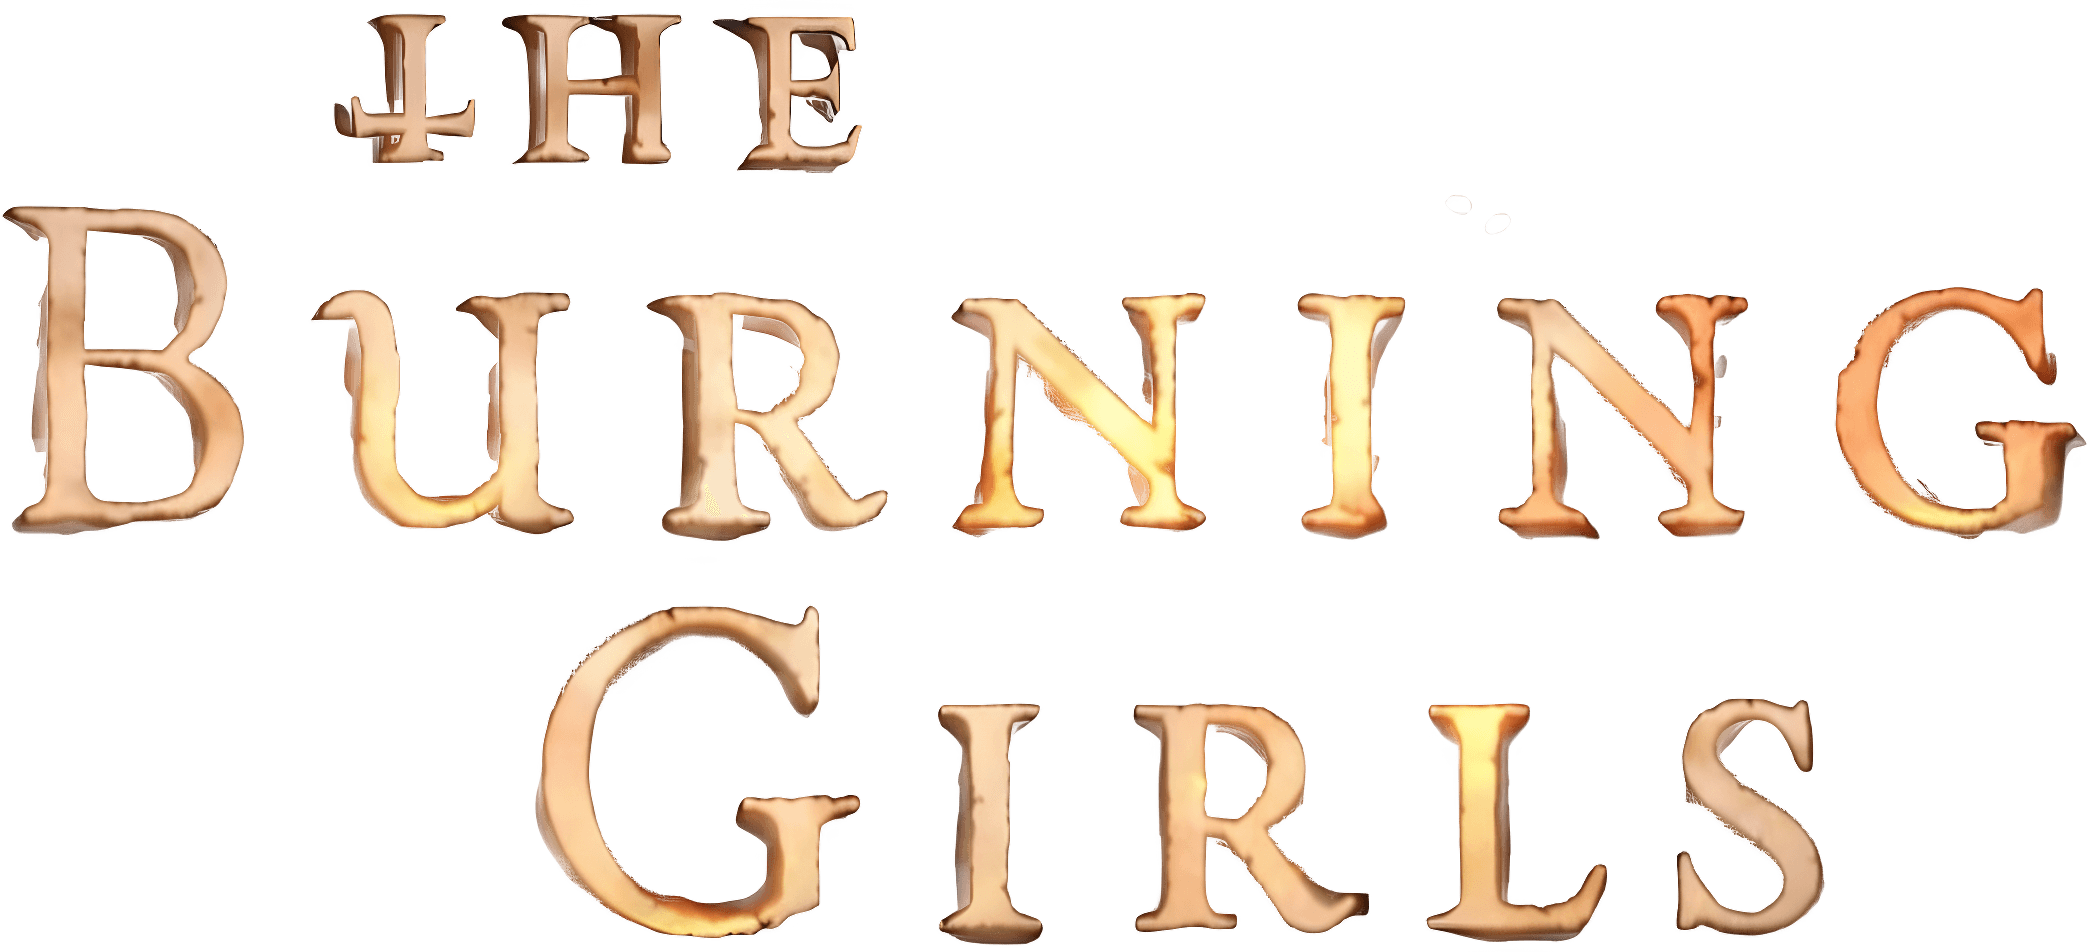 The Burning Girls logo